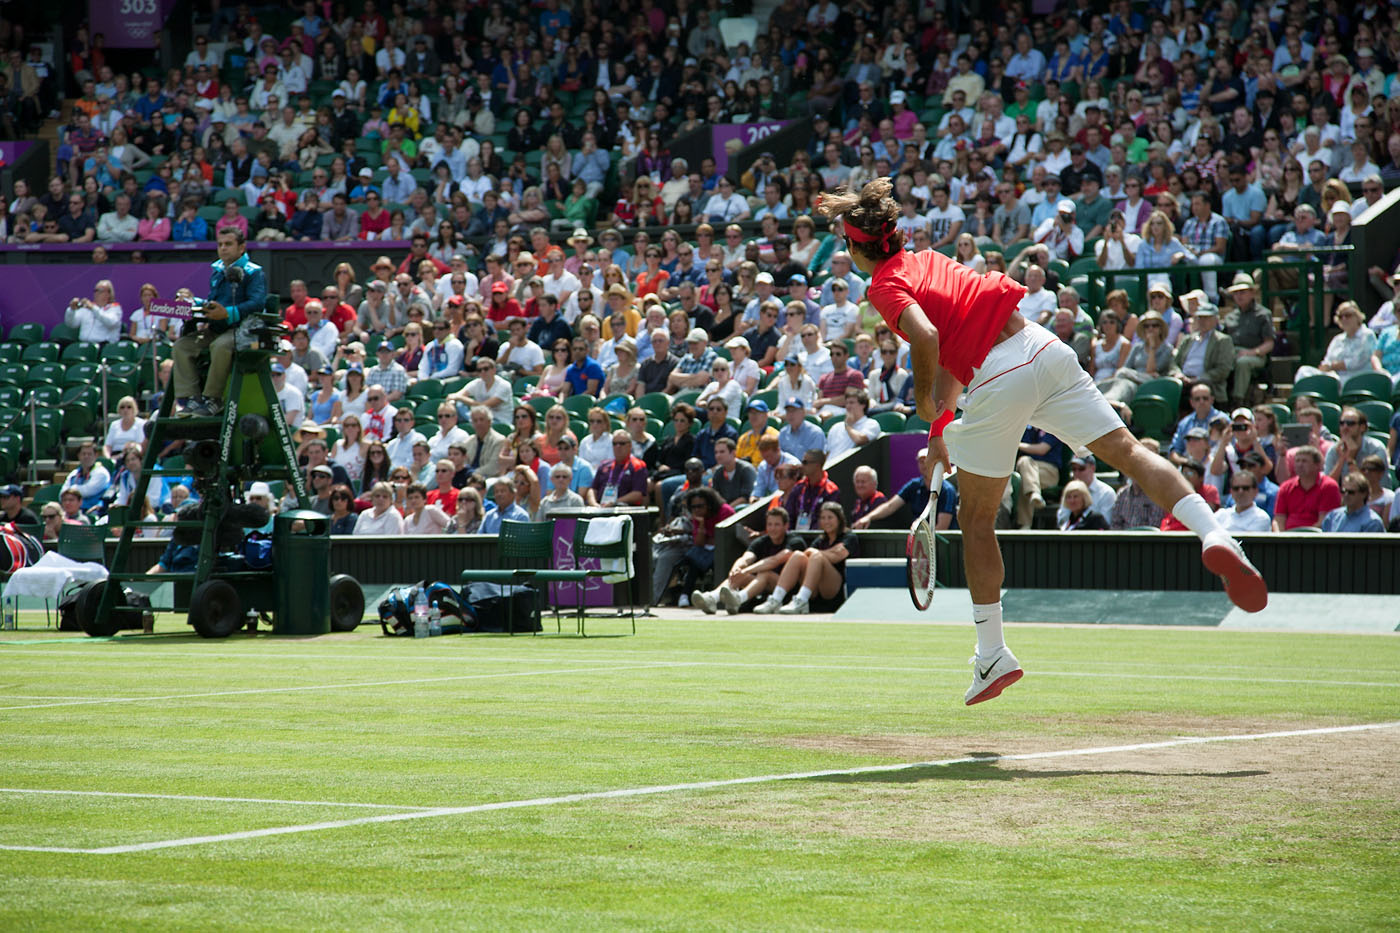 London 2012 - Roger Federer